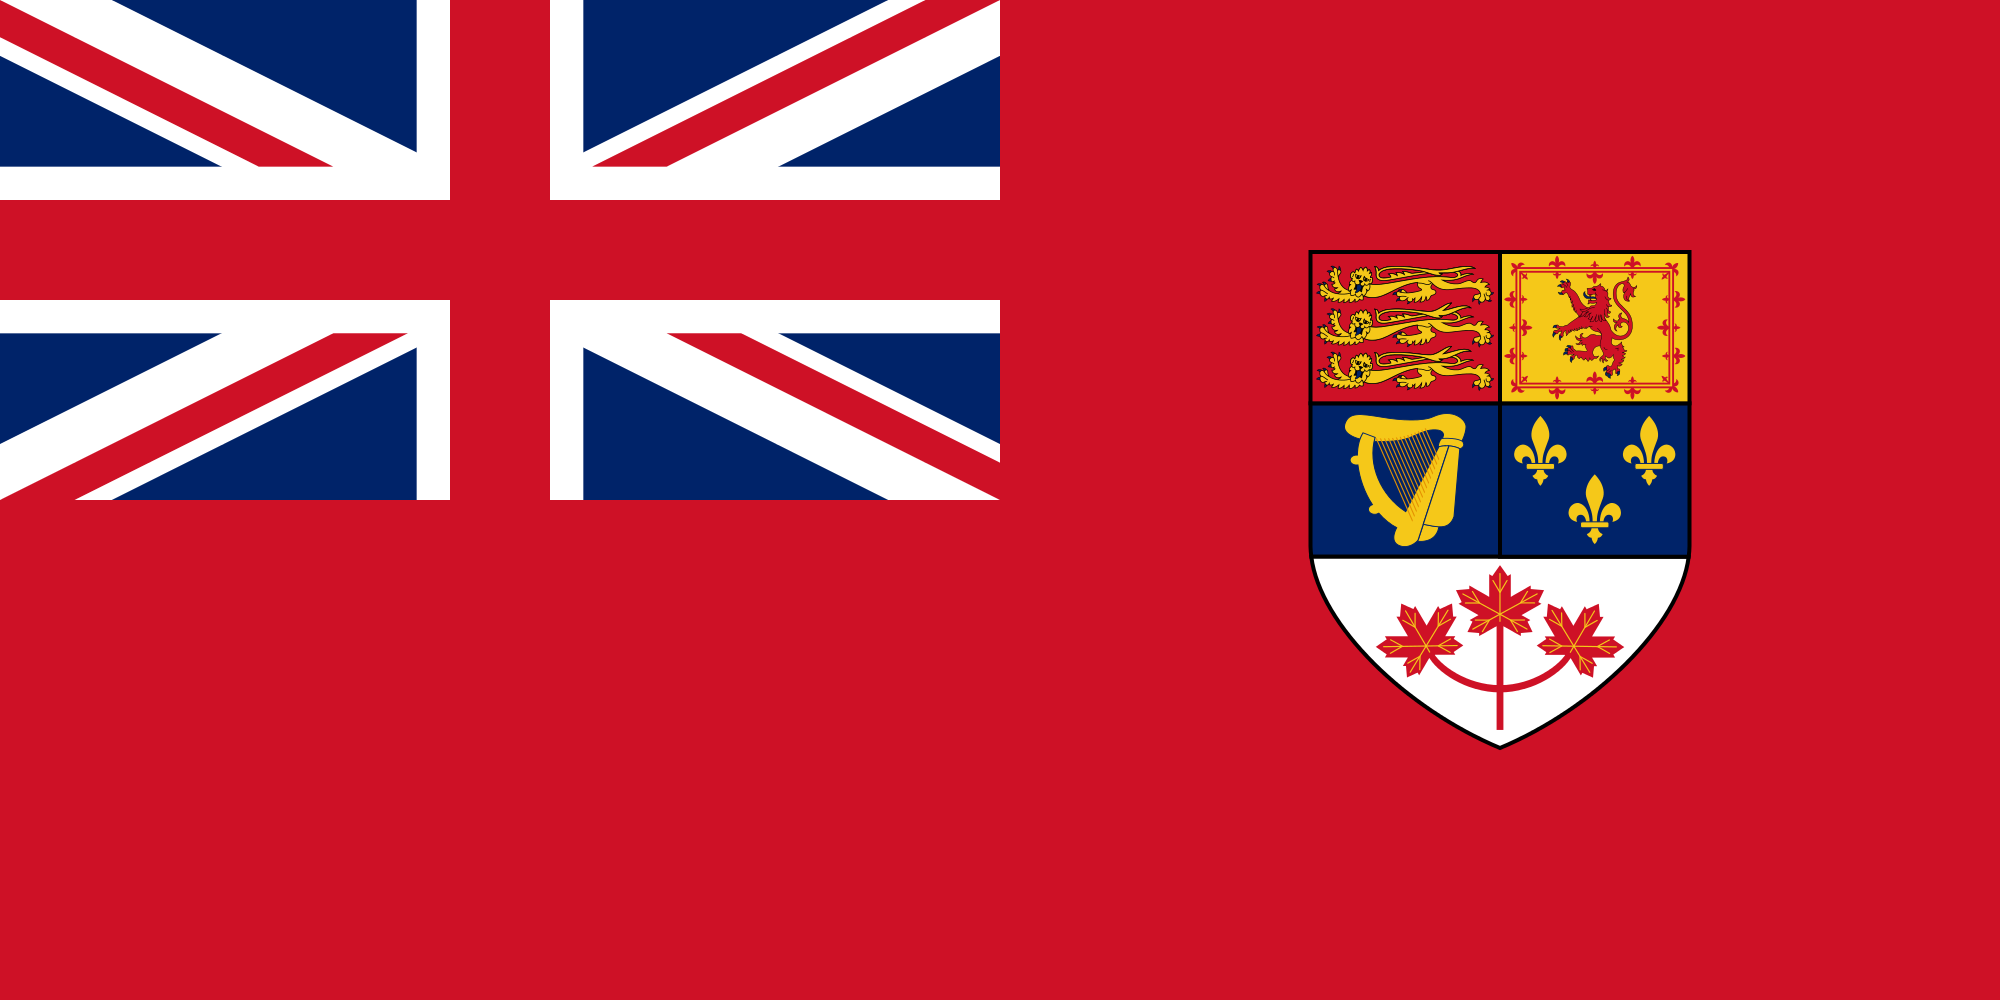 Canadian_Red_Ensign_1957-1965.svg